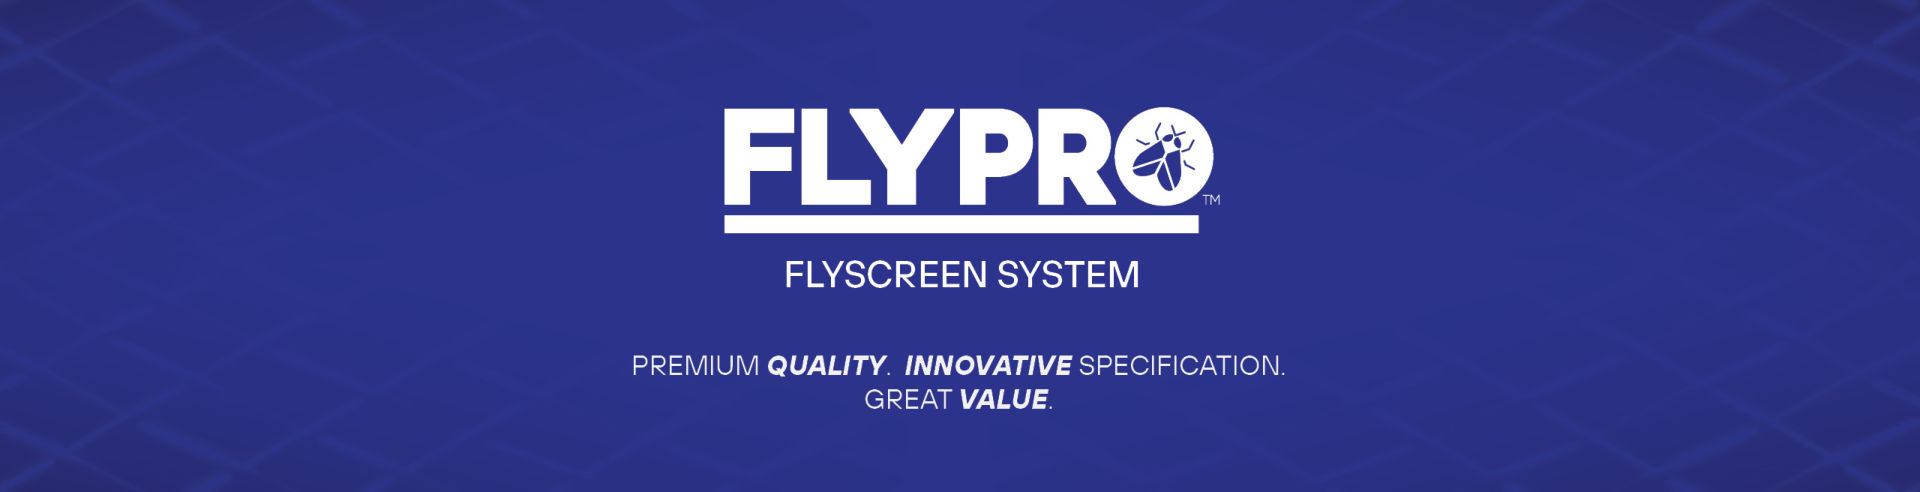 FLYPRO web header